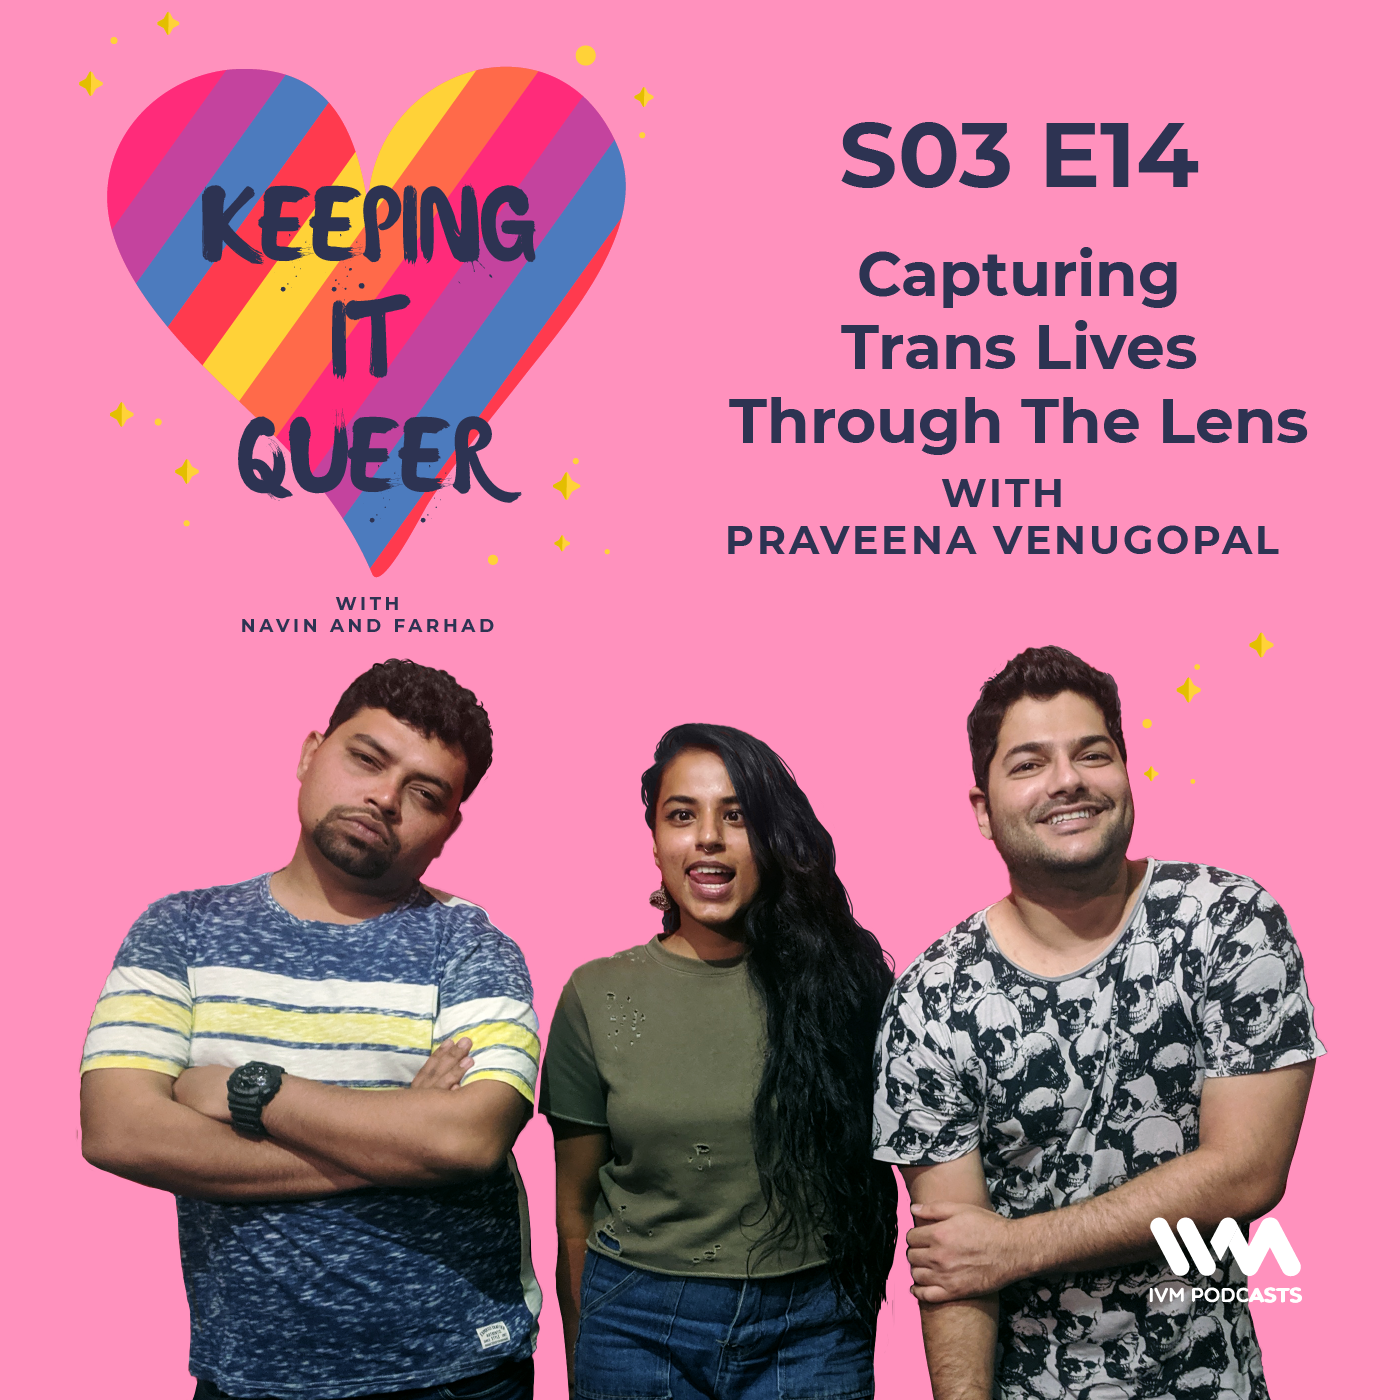 S03 E14: Capturing Trans Lives Through The Lens